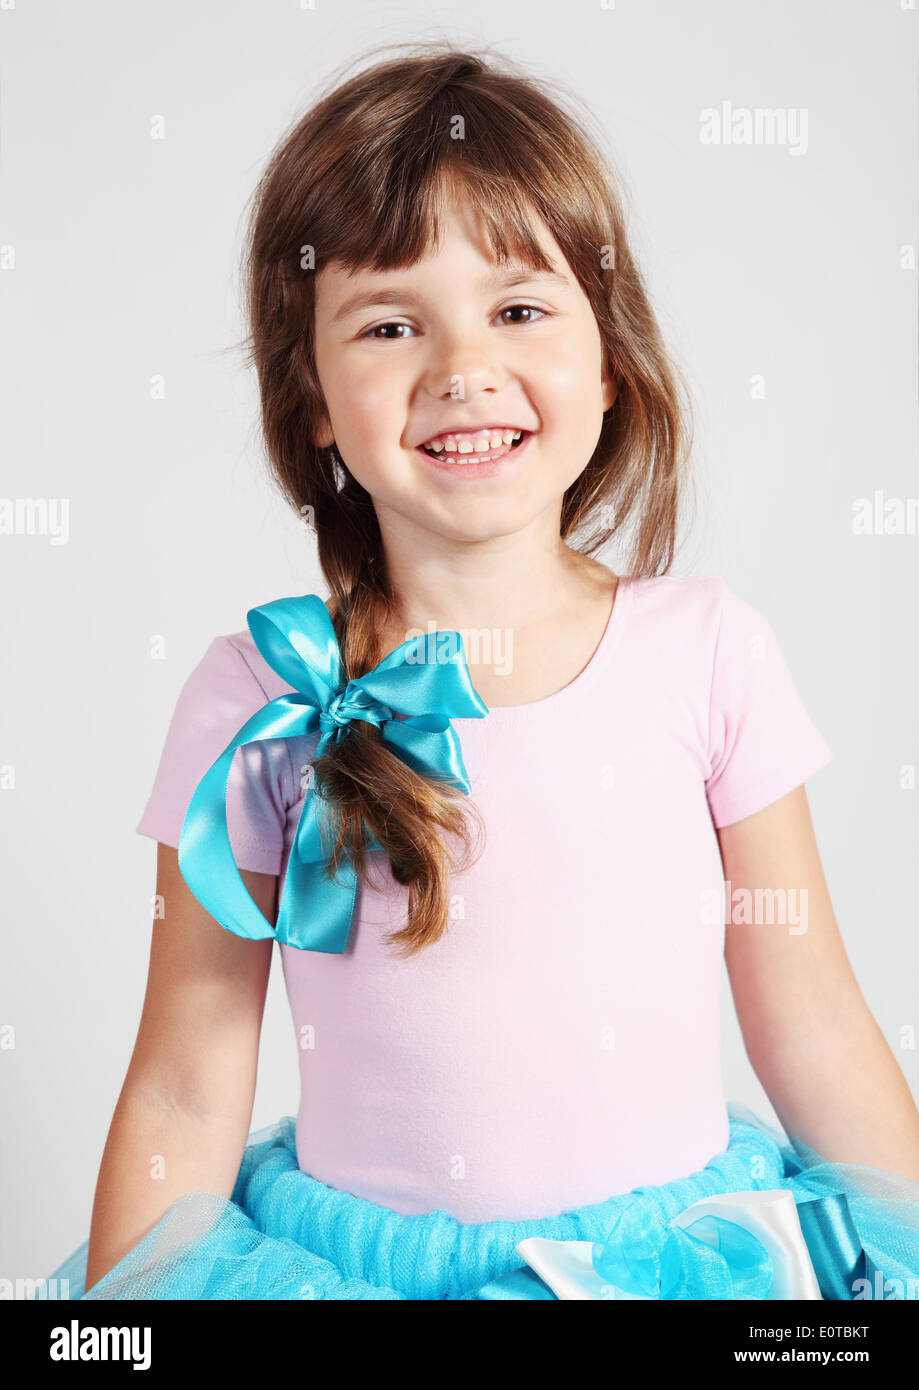 Little Girl Smiling Portrait Studio Shot over Gray Stock Photo